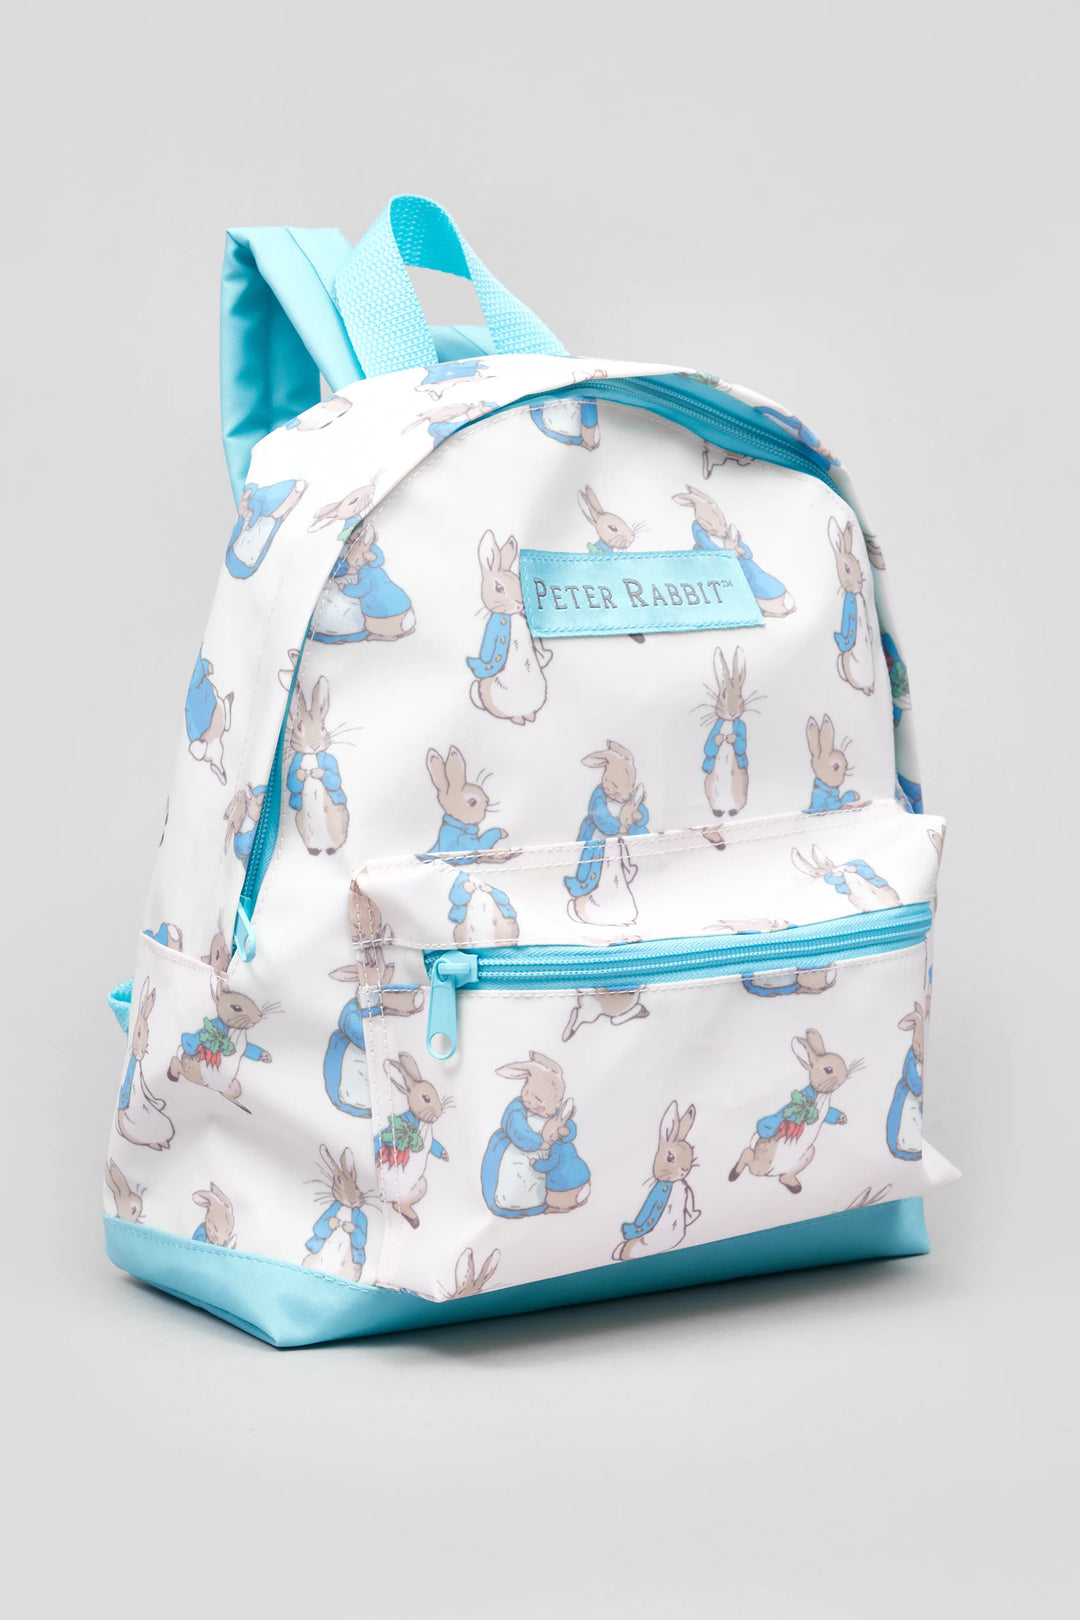 Peter Rabbit AOP Roxy Backpack